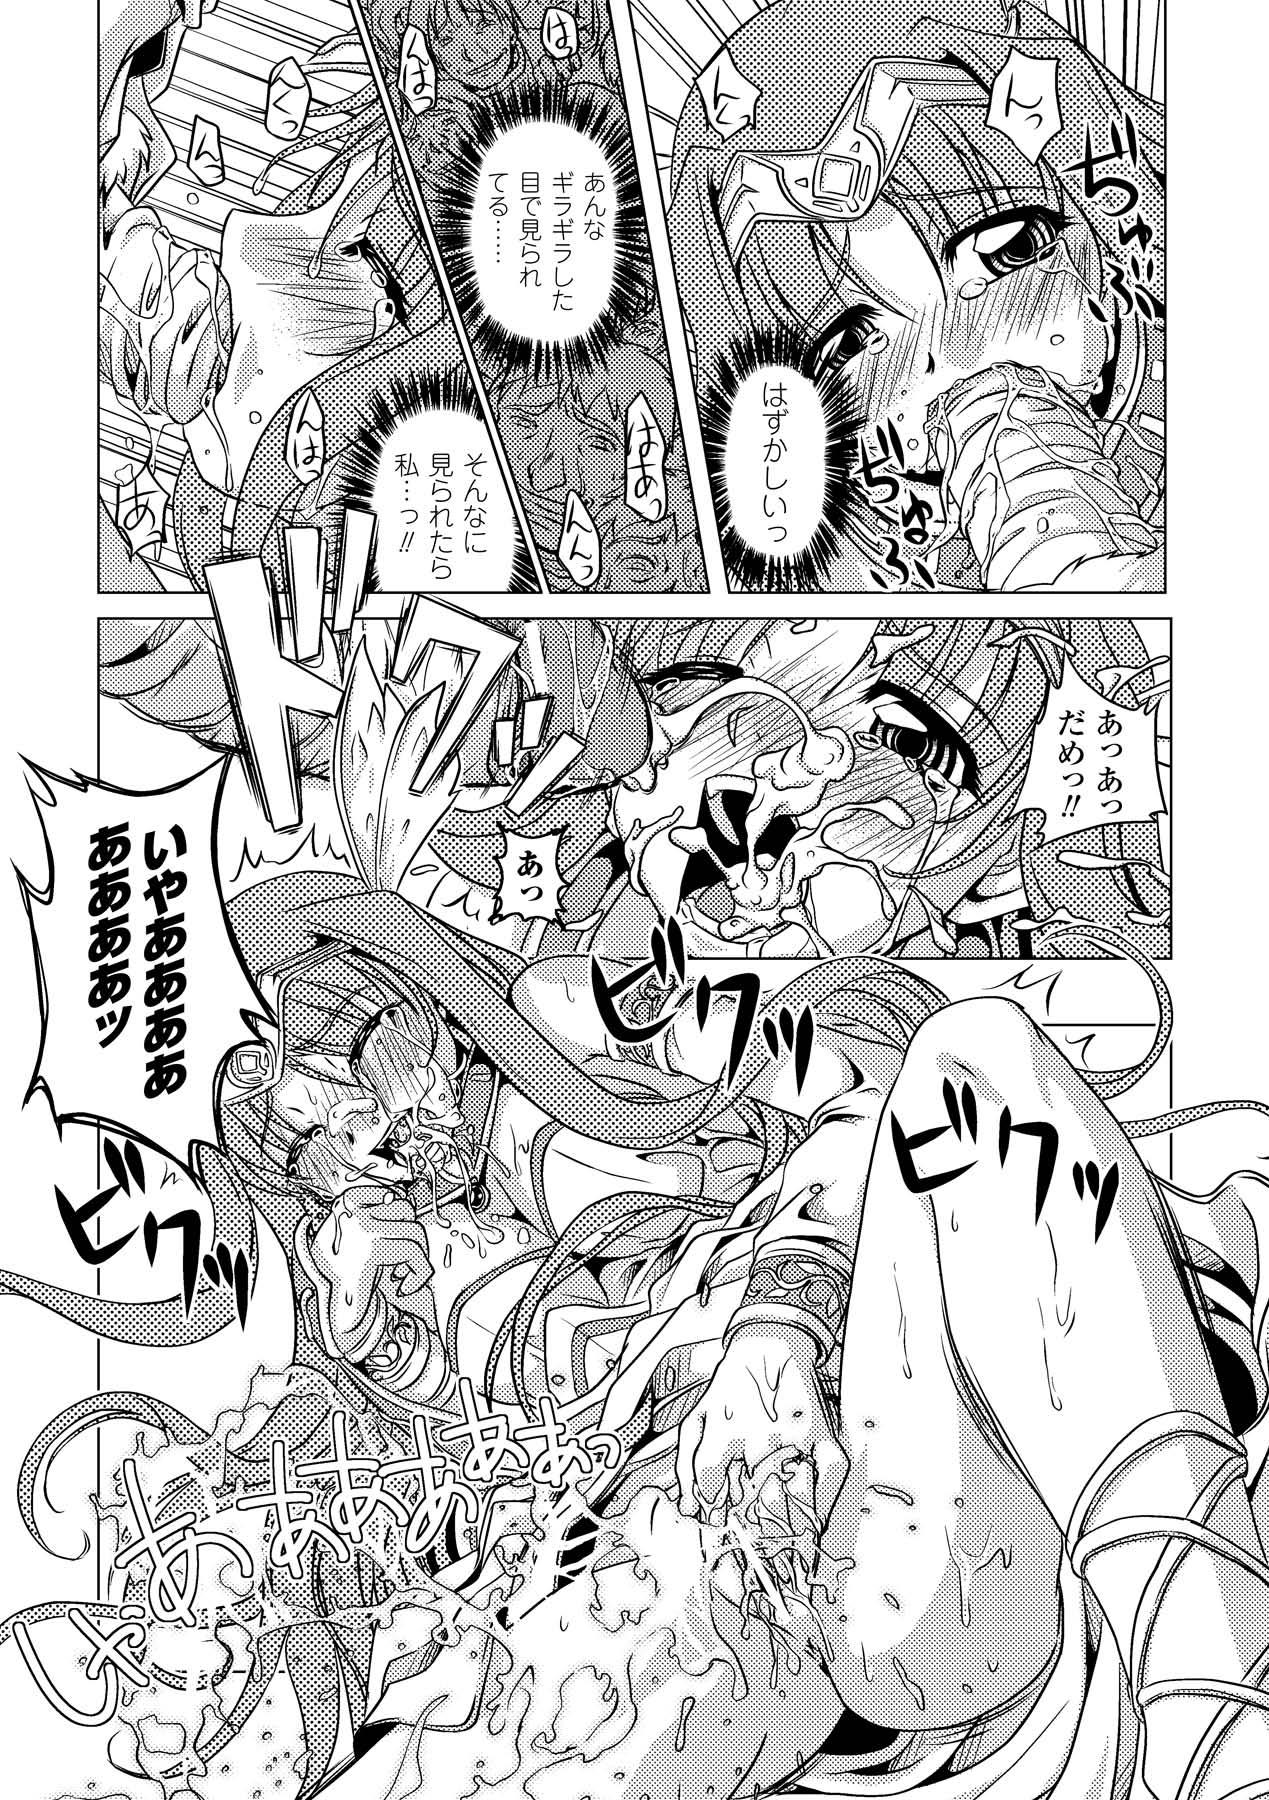 Bitch Zetsumetsu Kigu Megami - Suisei tenshi prima veil zwei Pay - Page 13